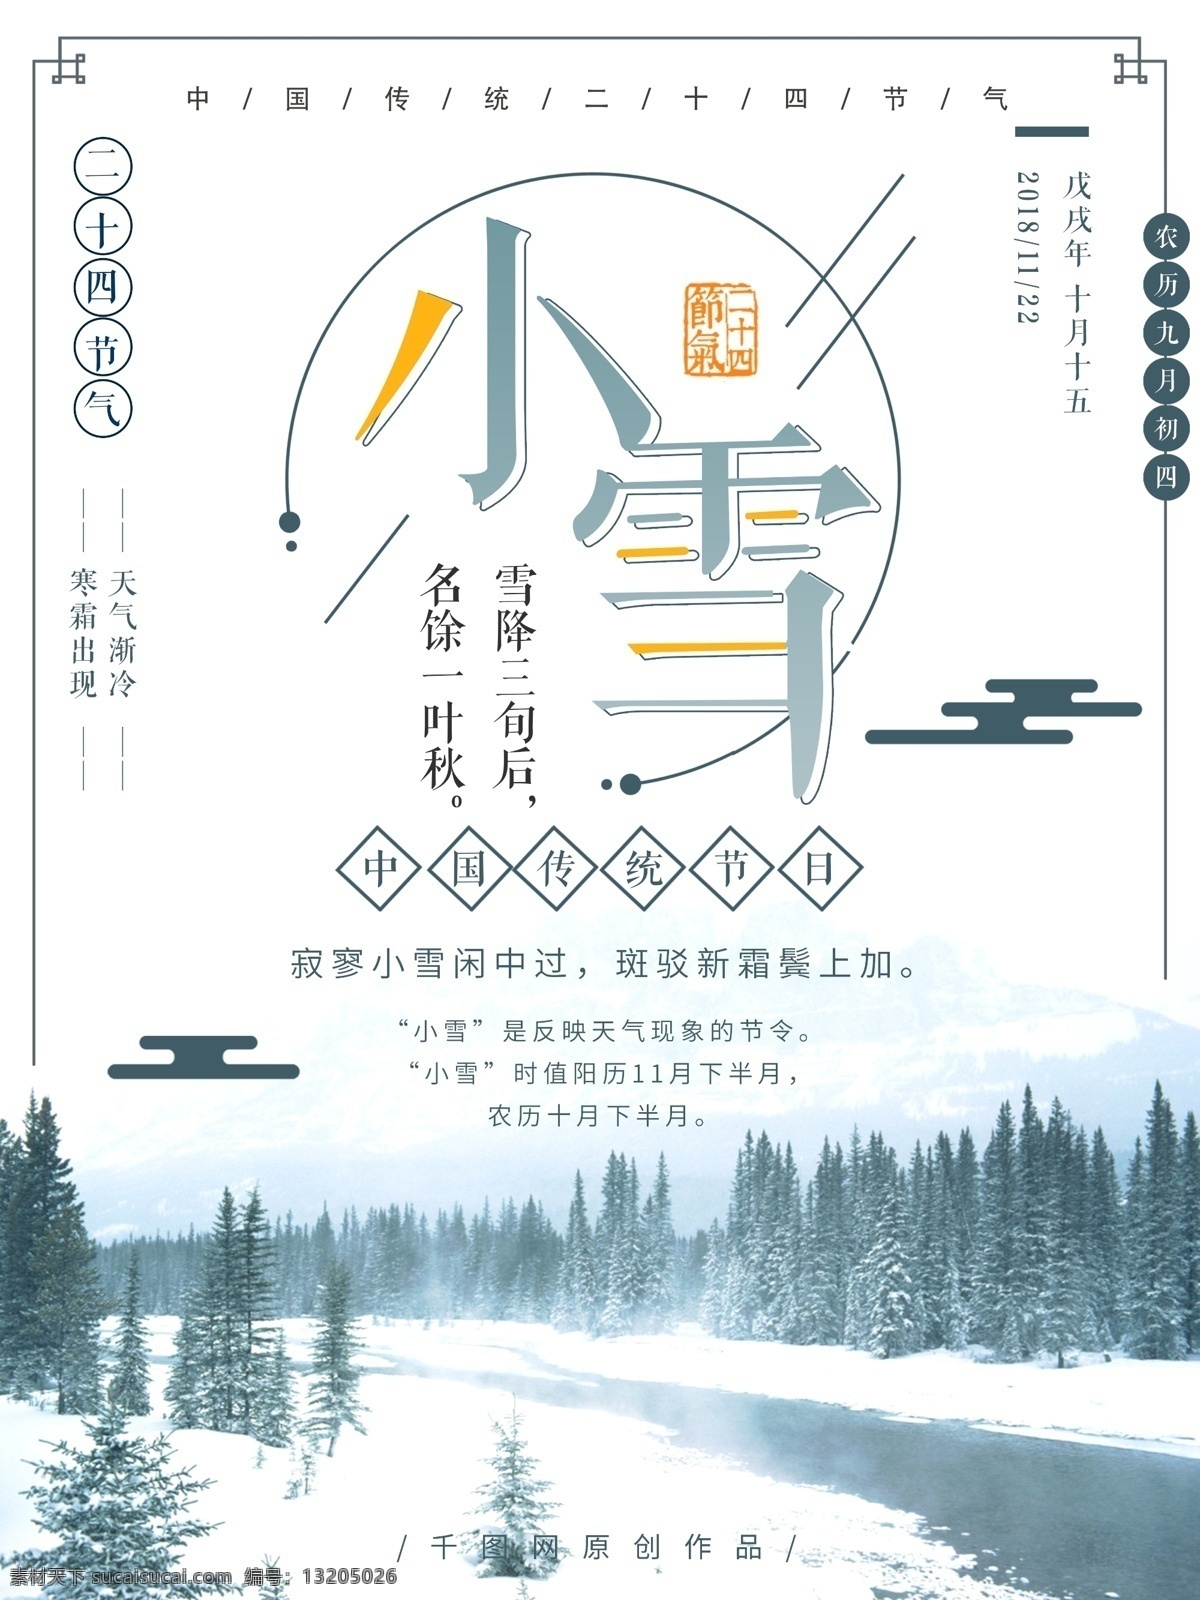 传统 二十四节气 小雪 节日 海报 传统节日 冬天 中国风 简约 节气